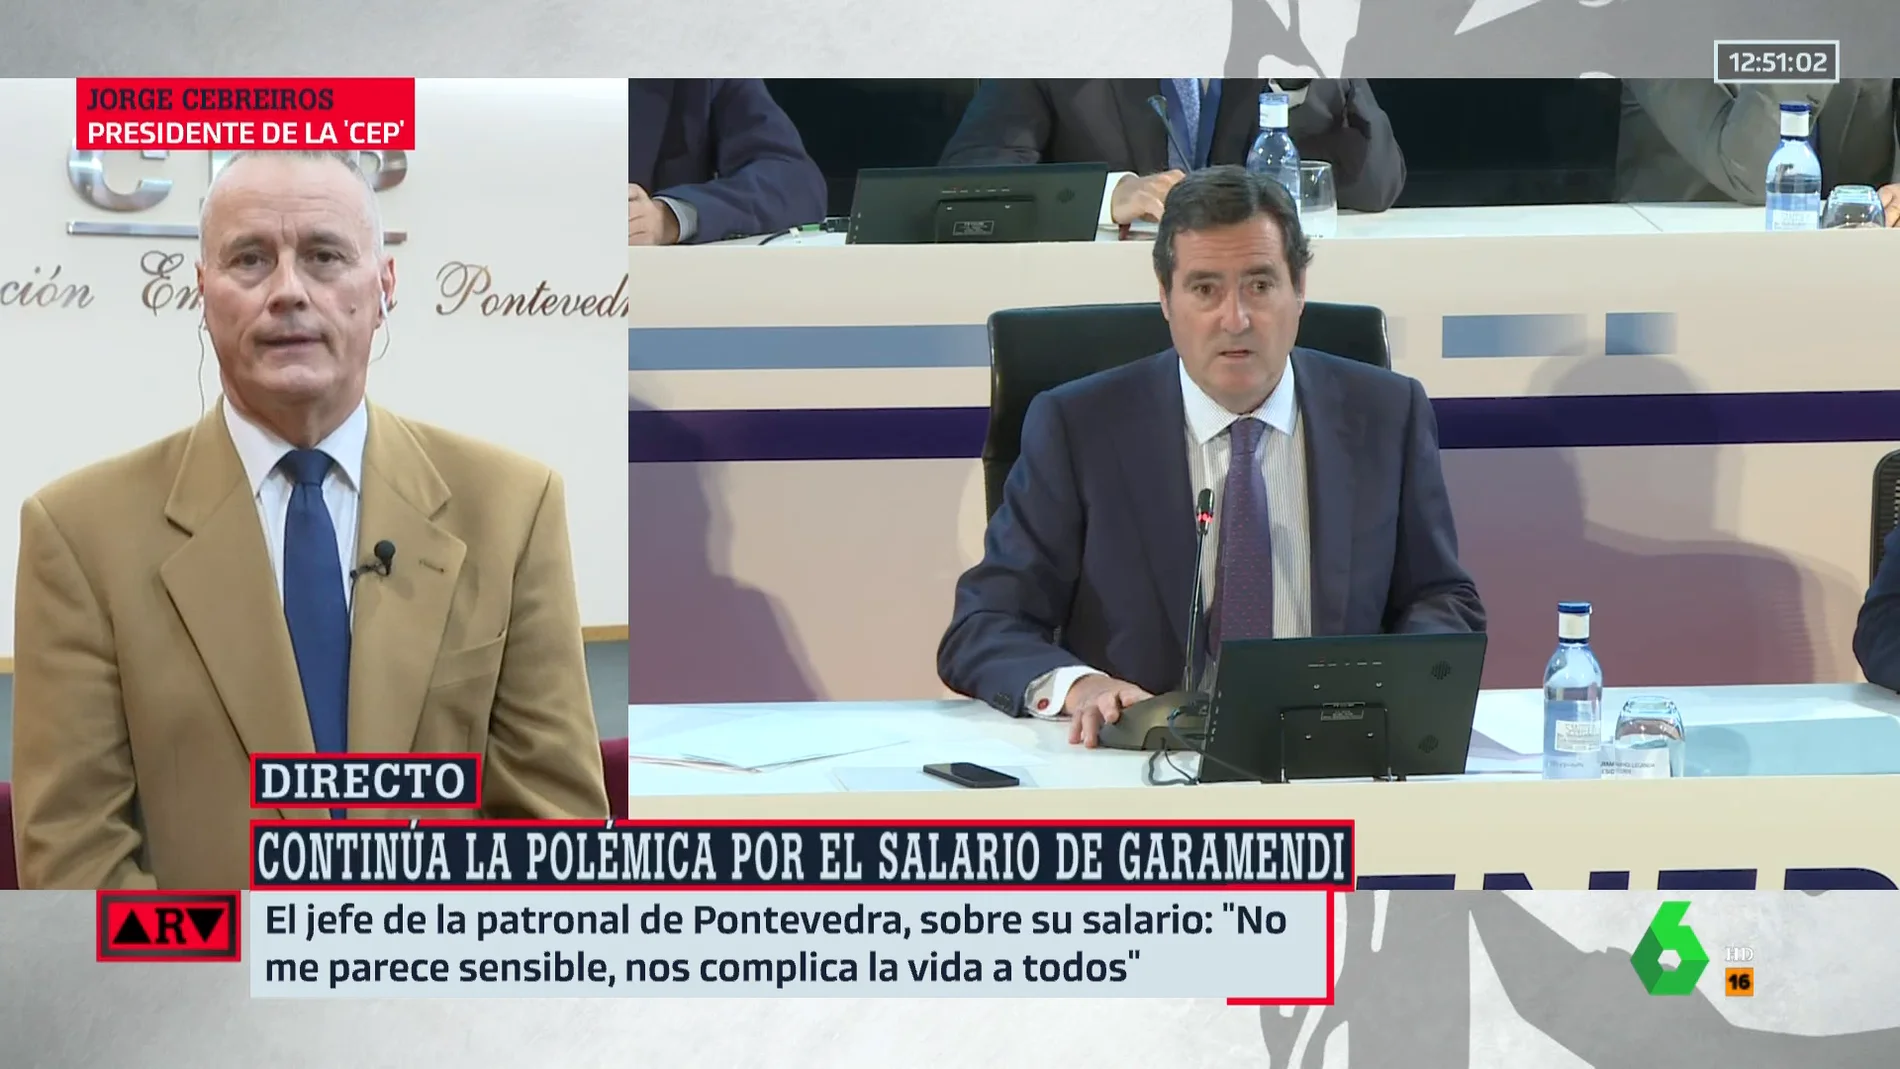 El presidente de la patronal de Pontevedra rechaza la subida salarial de Garamendi: "No es el momento"